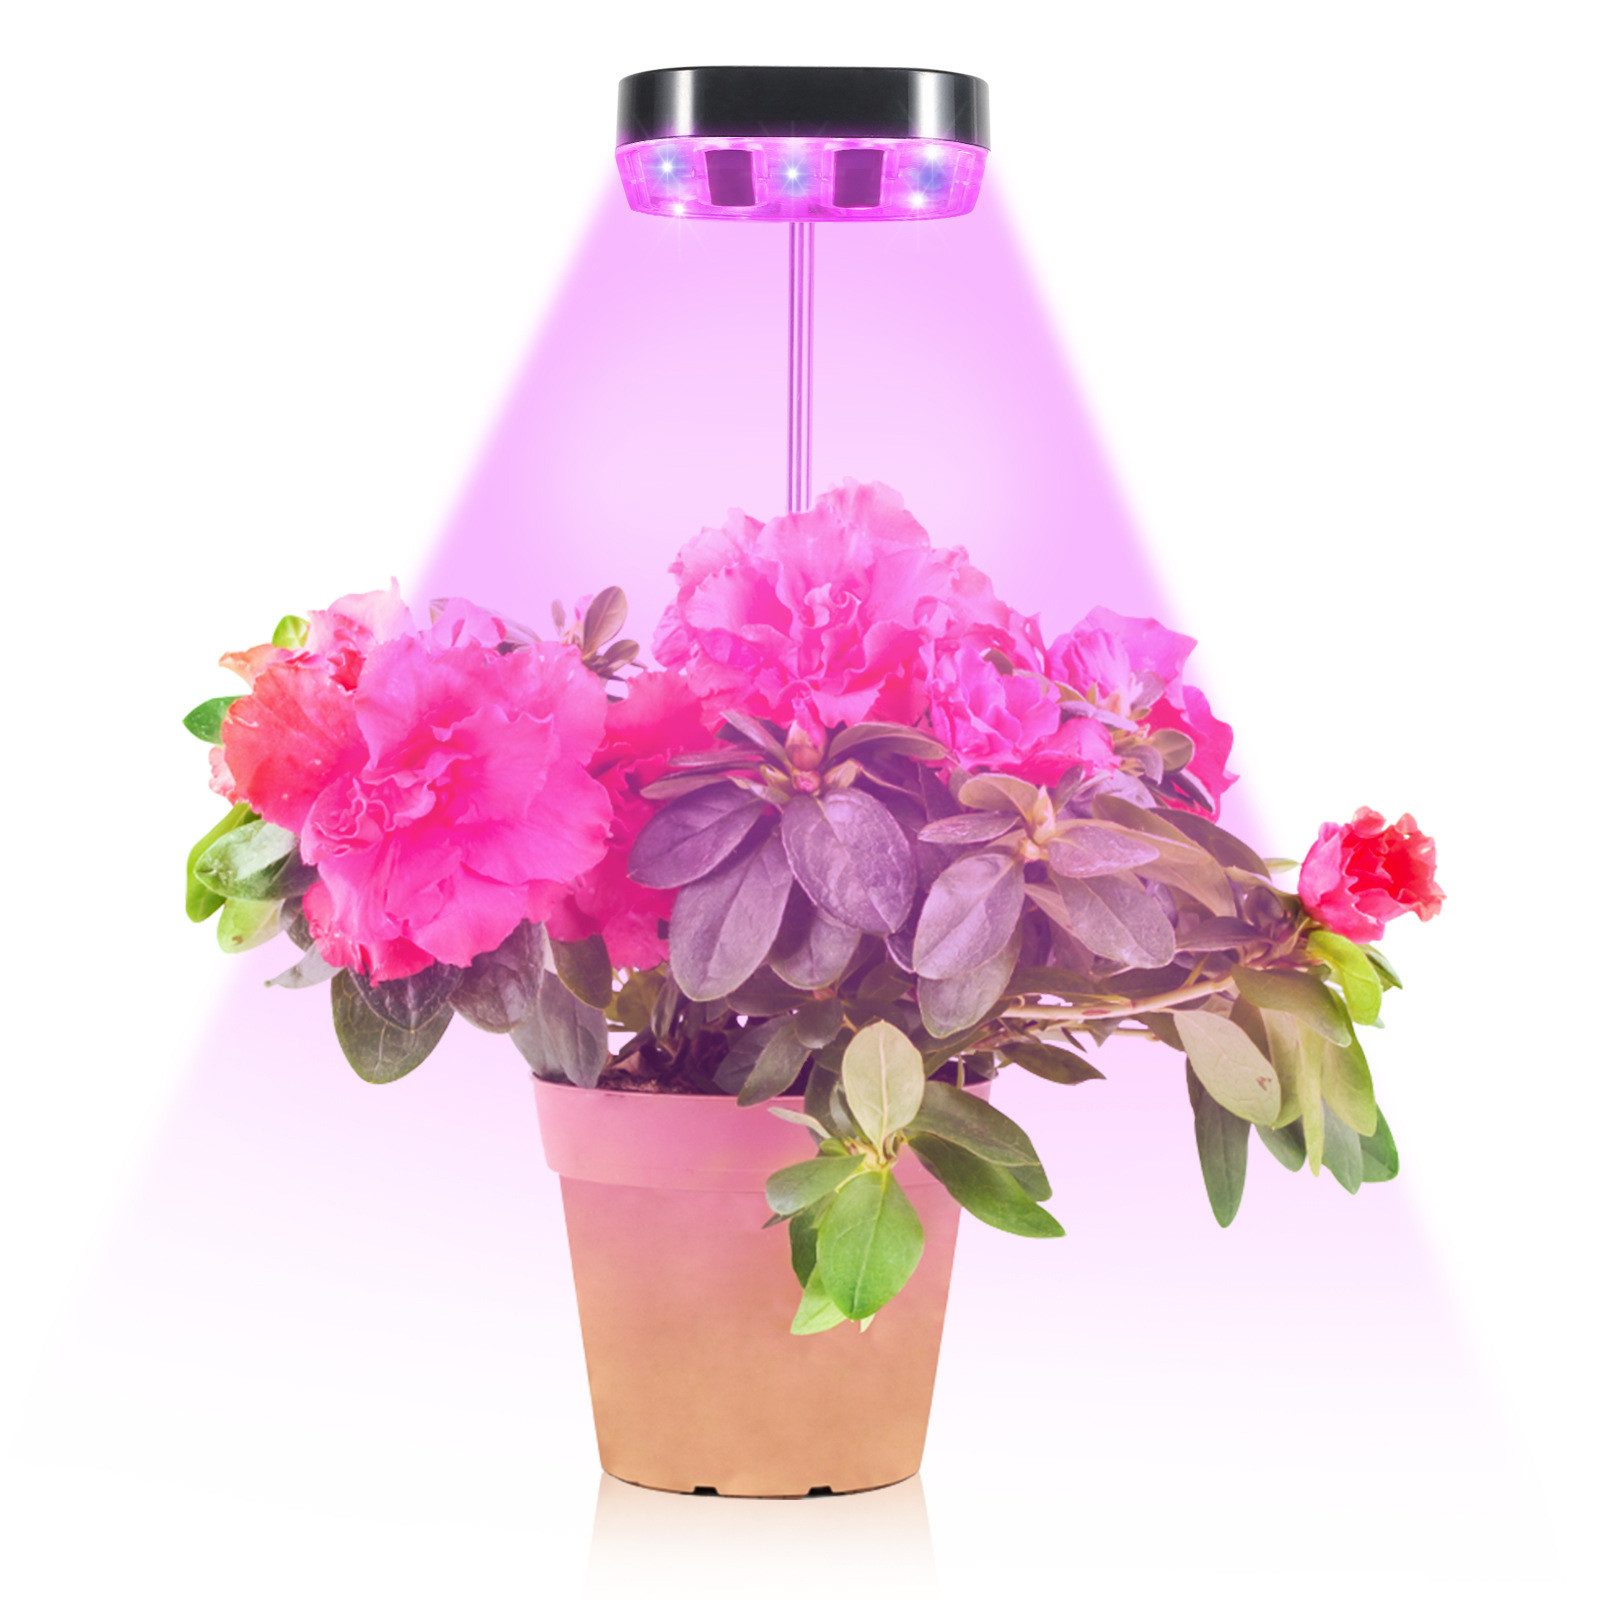 Rosnek Pflanzenlampe Vollspektrum, 3 Farben, dimmbar, Timer, USB, für Zimmerpflanze, Sukkulente Pflanze Garten Topfpflanze Saatgut Anzucht, höhenverstellbar